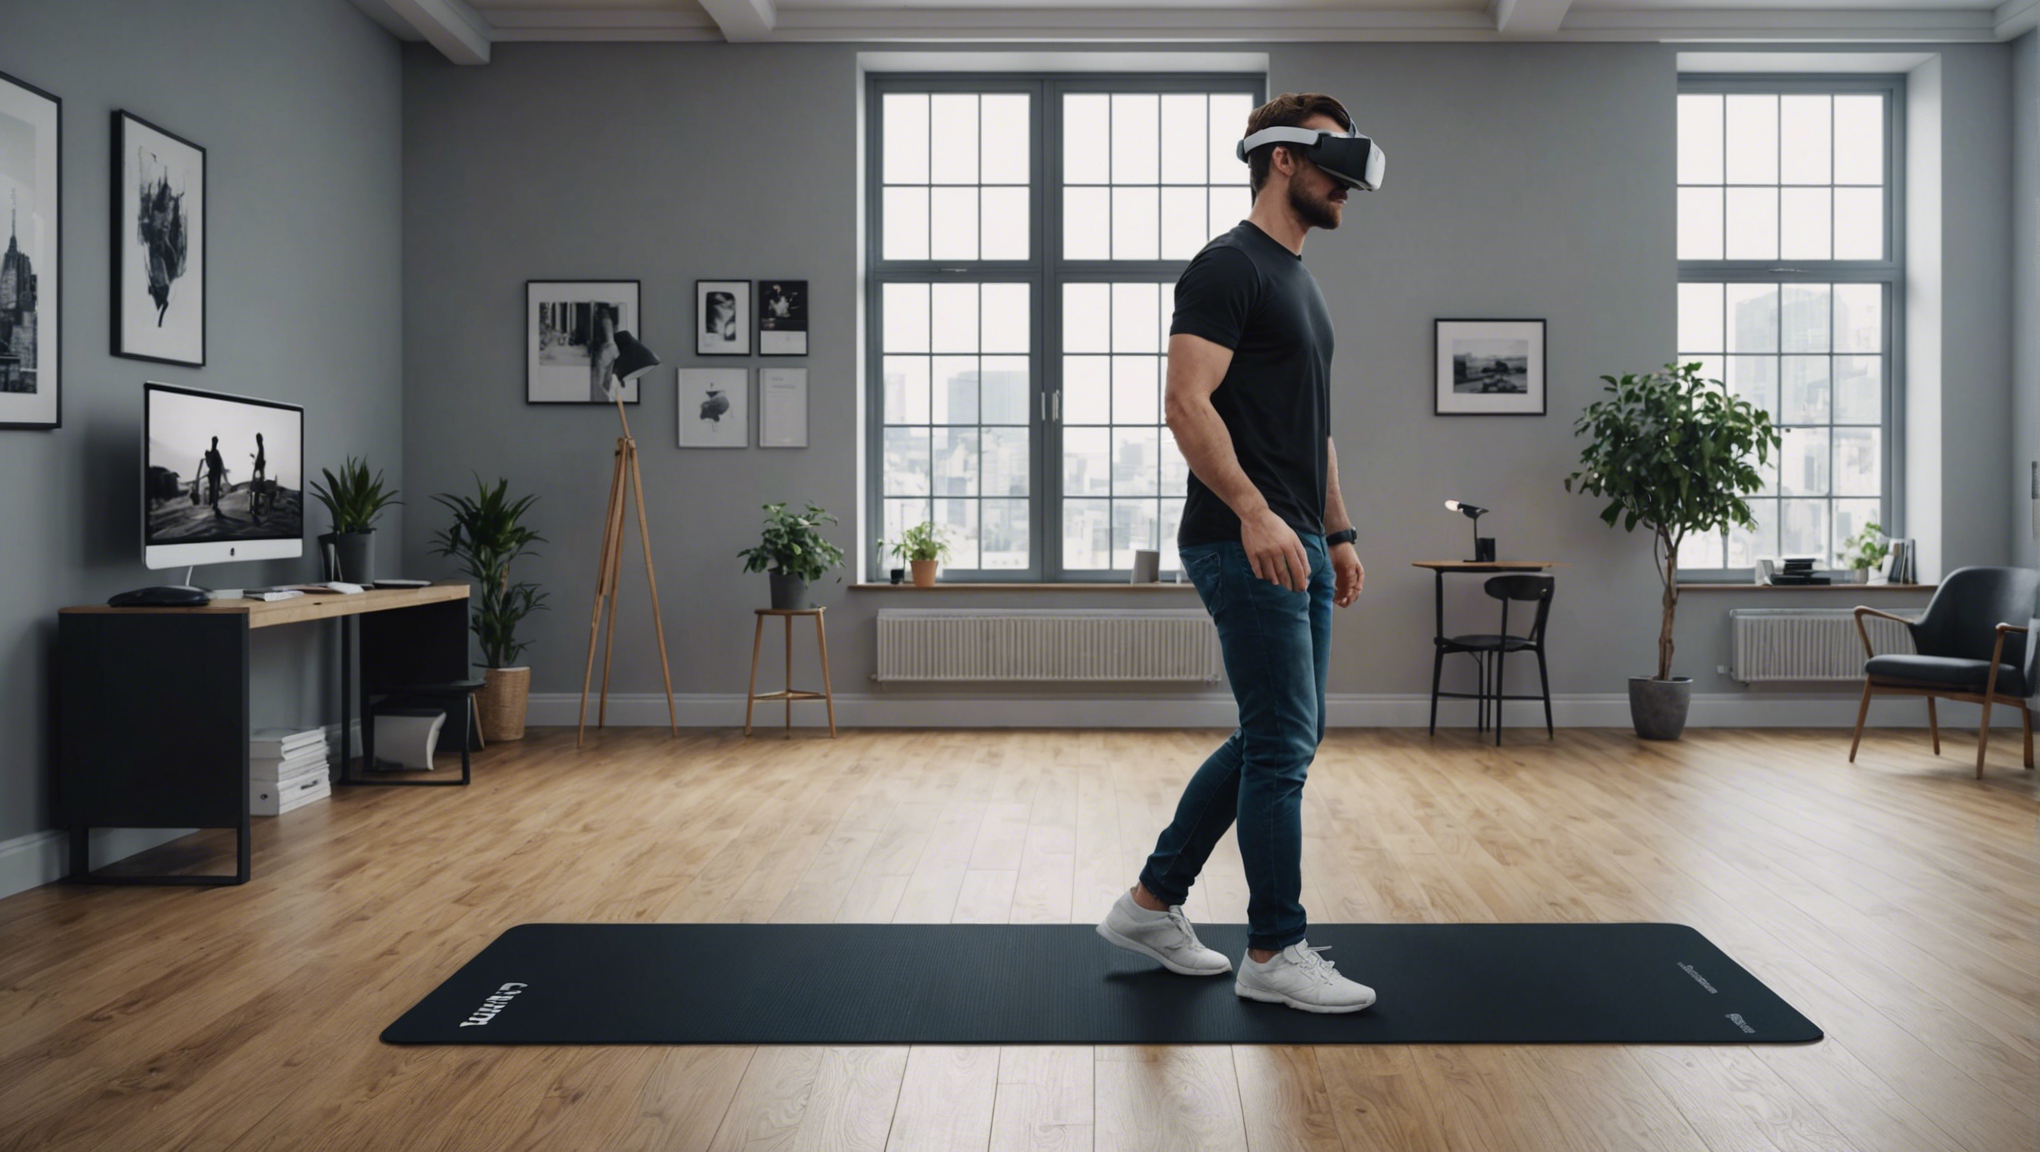 découvrez si vous pouvez marcher en réalité virtuelle avec un tapis de marche et explorez cette expérience immersive grâce à notre article complet.